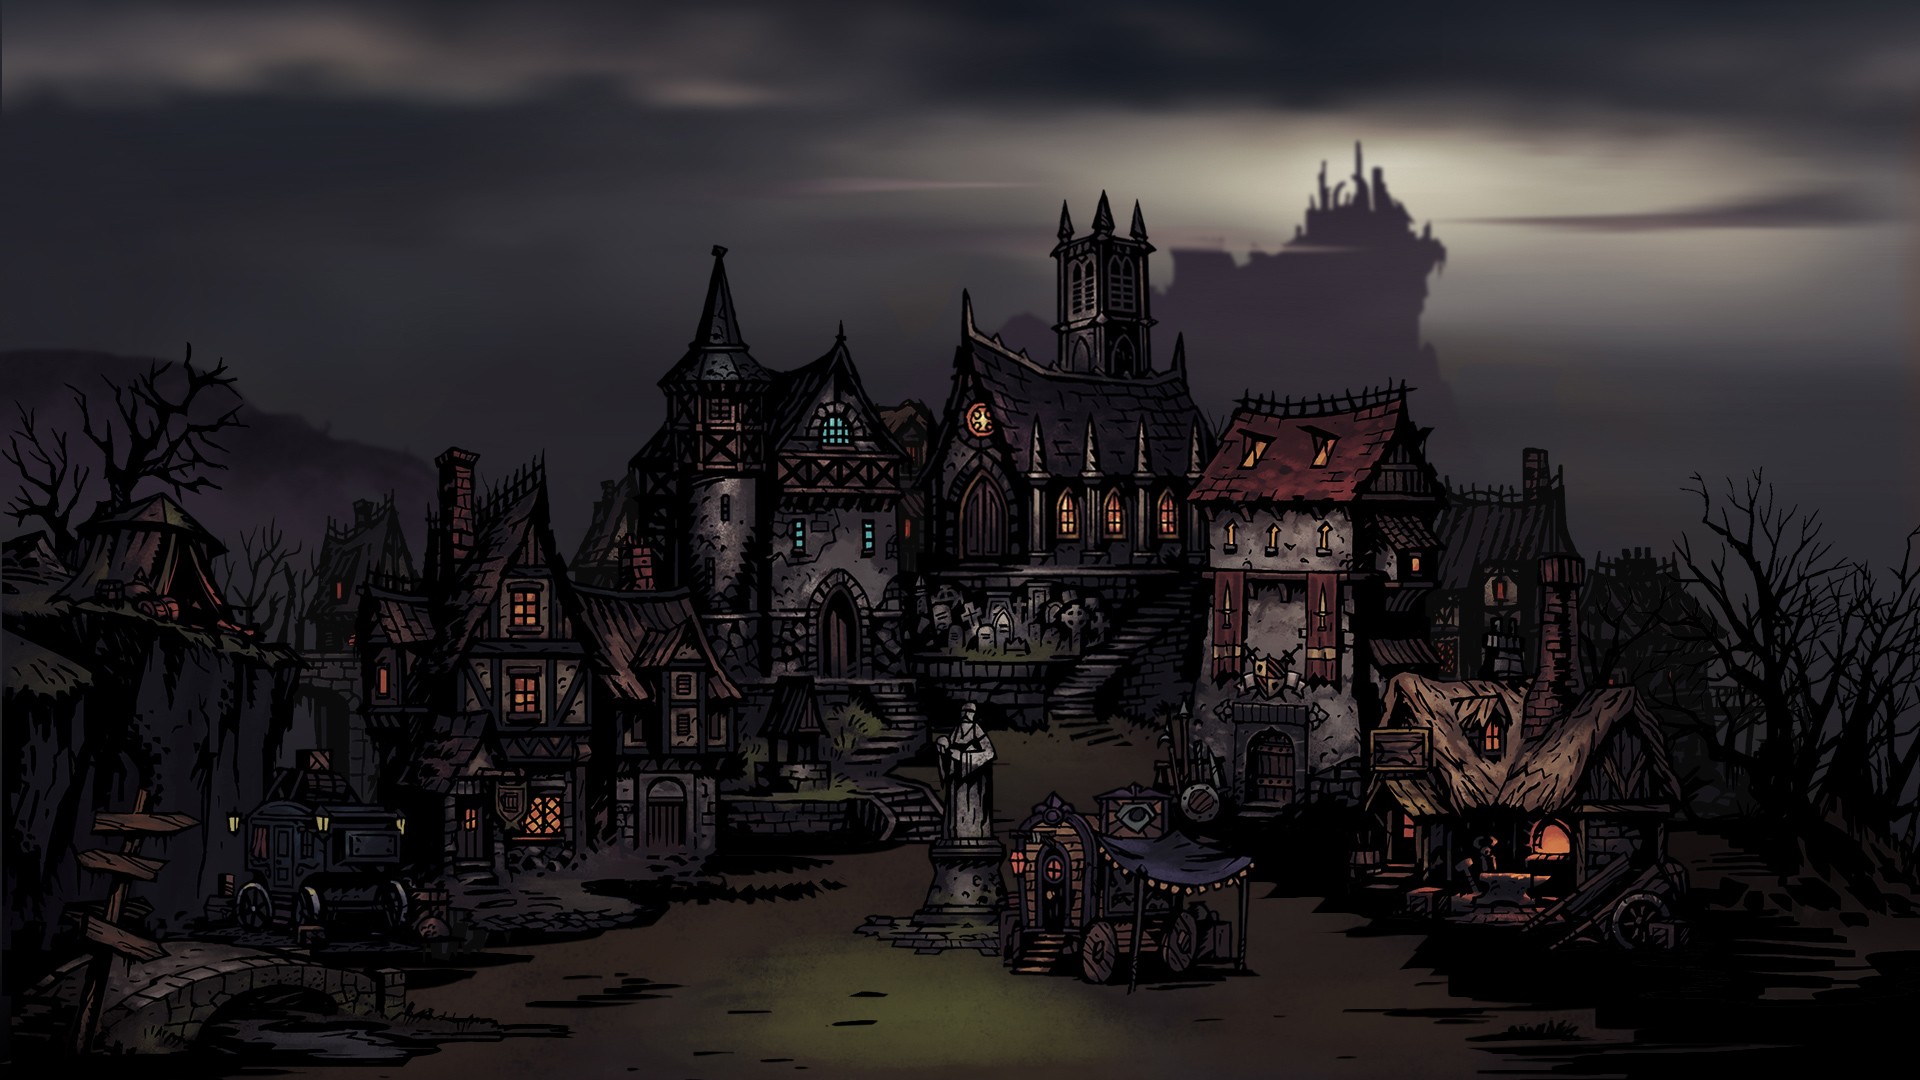 darkest dungeon wallpaper,sky,darkness,screenshot,dusk,architecture